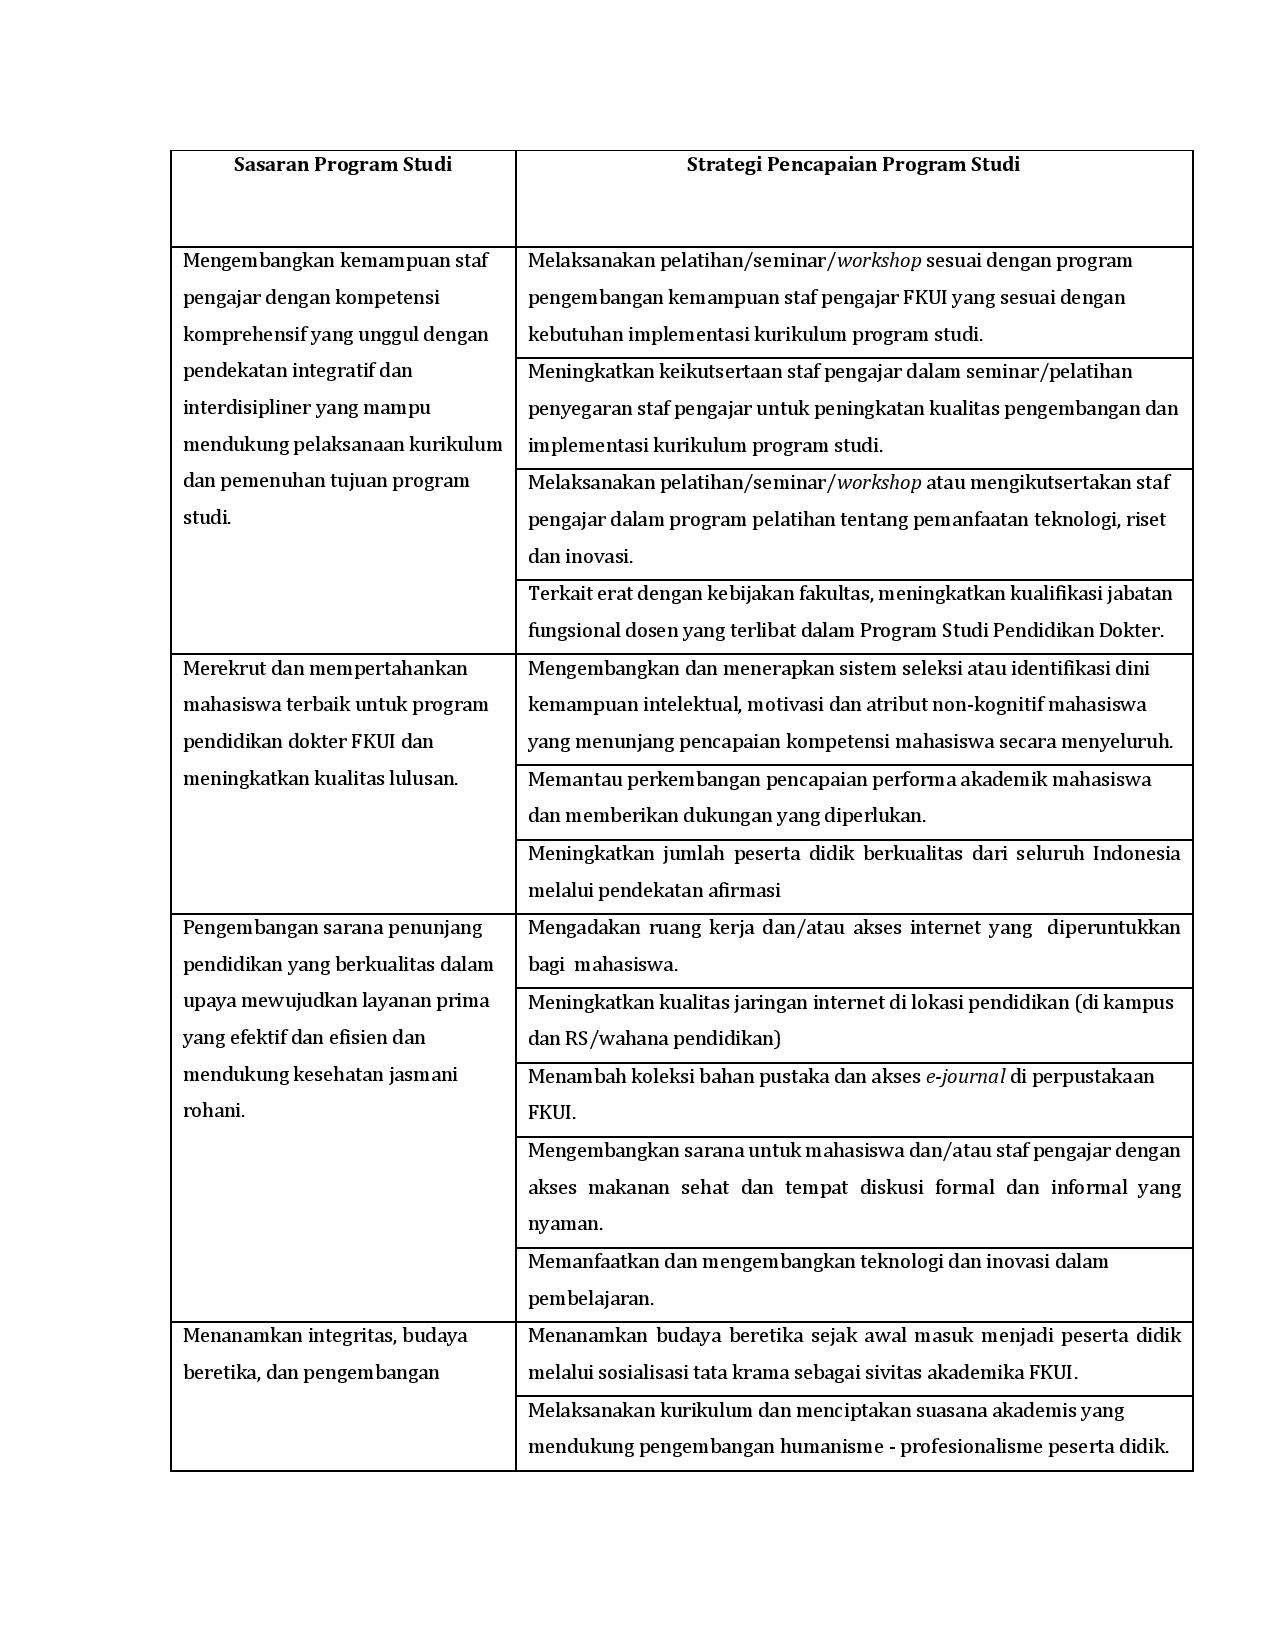 Sasaran dan Strategi Program Studi-page-002